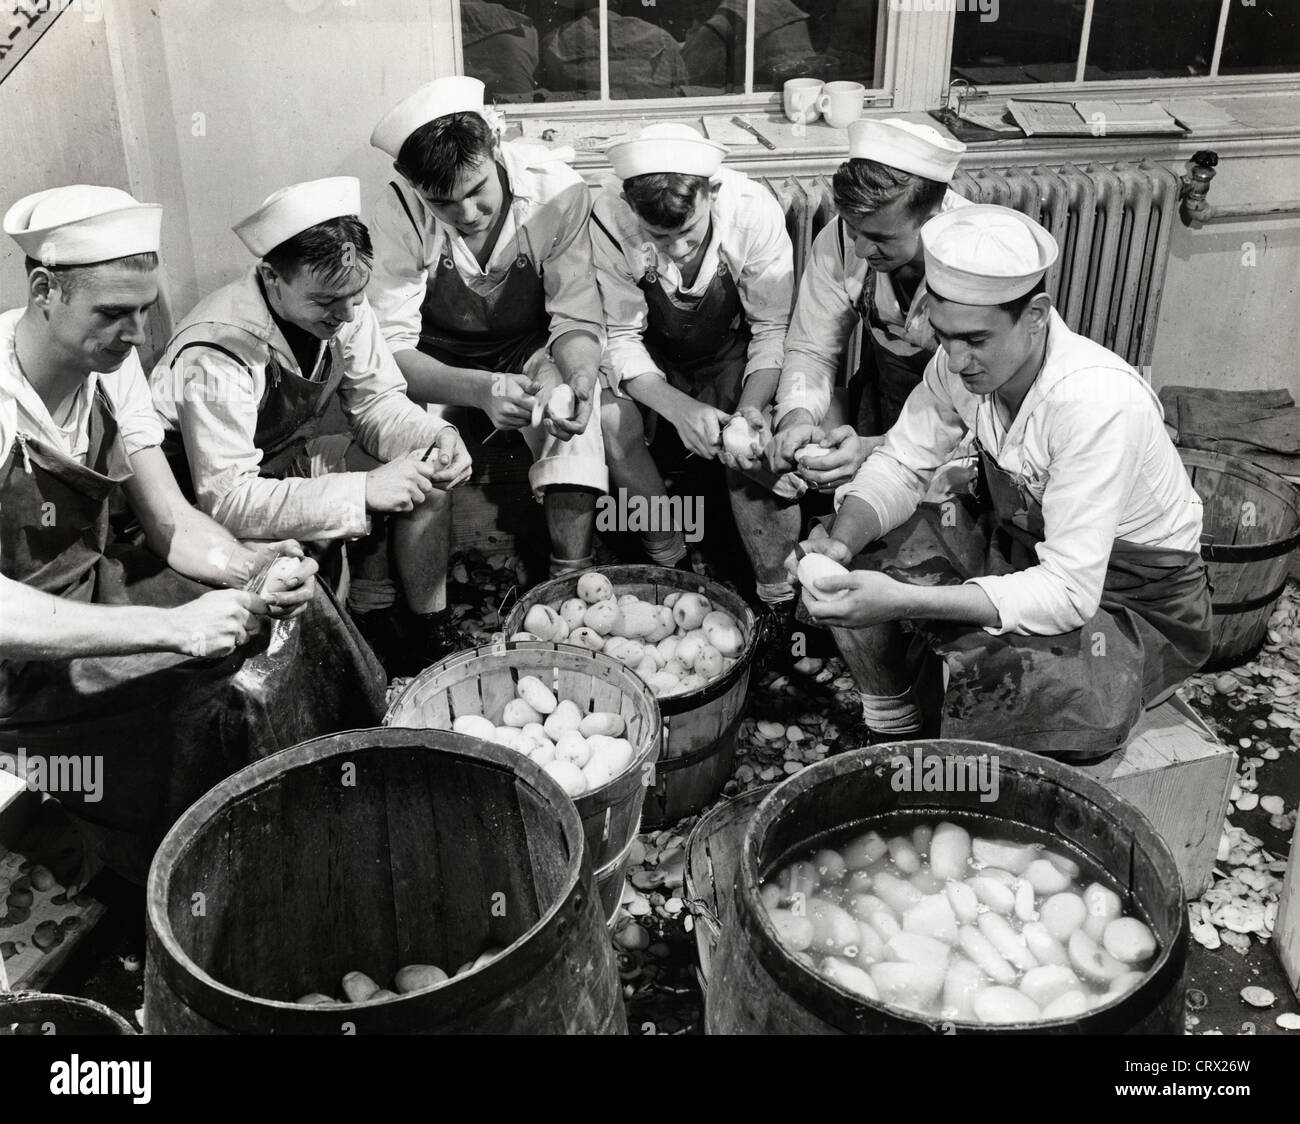 kp-duty-peeling-potatoes-norfolk-va-1941-CRX26W.jpg